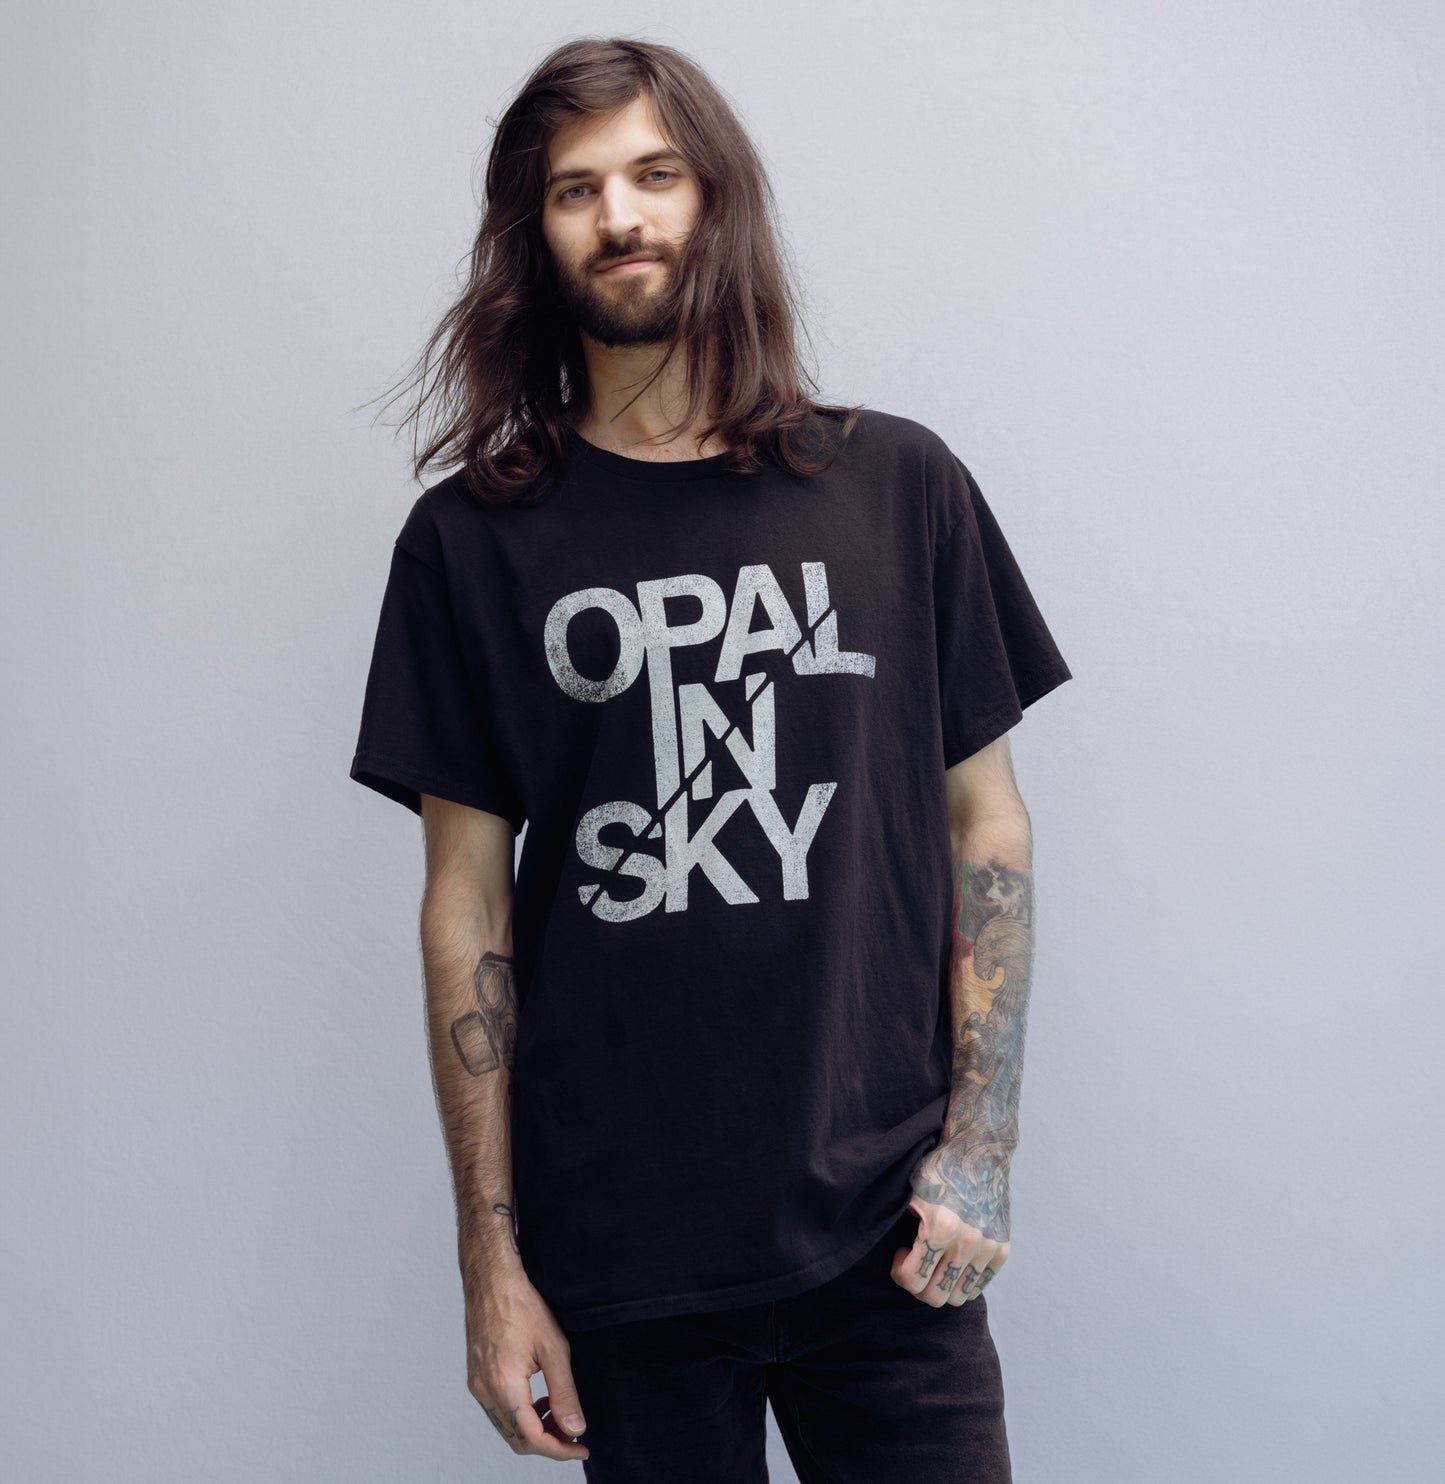 OPAL IN SKY "LOGO" Unisex T-Shirt